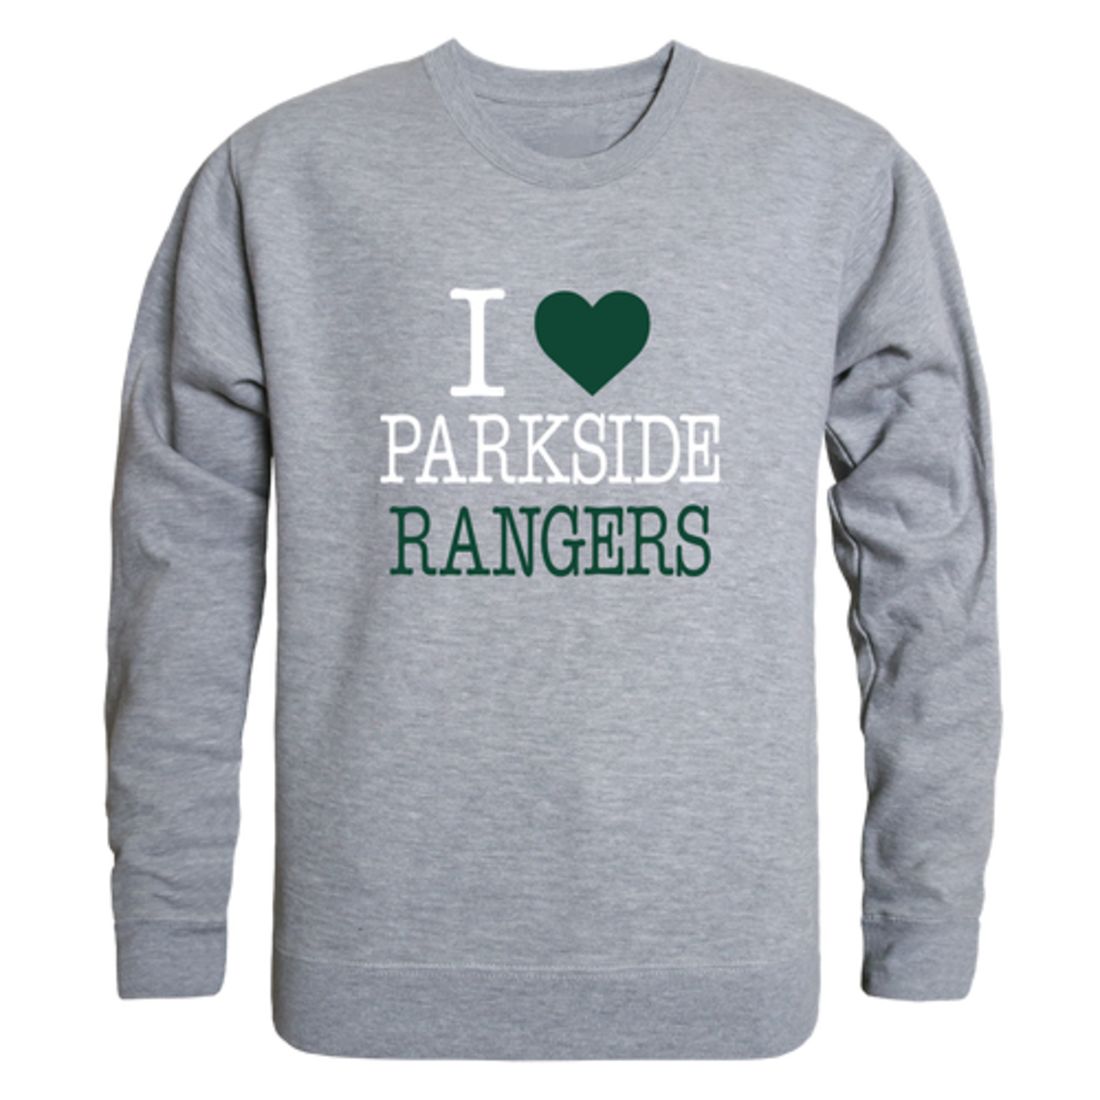 I-Love-University-of-Wisconsin-Parkside-Rangers-Fleece-Crewneck-Pullover-Sweatshirt